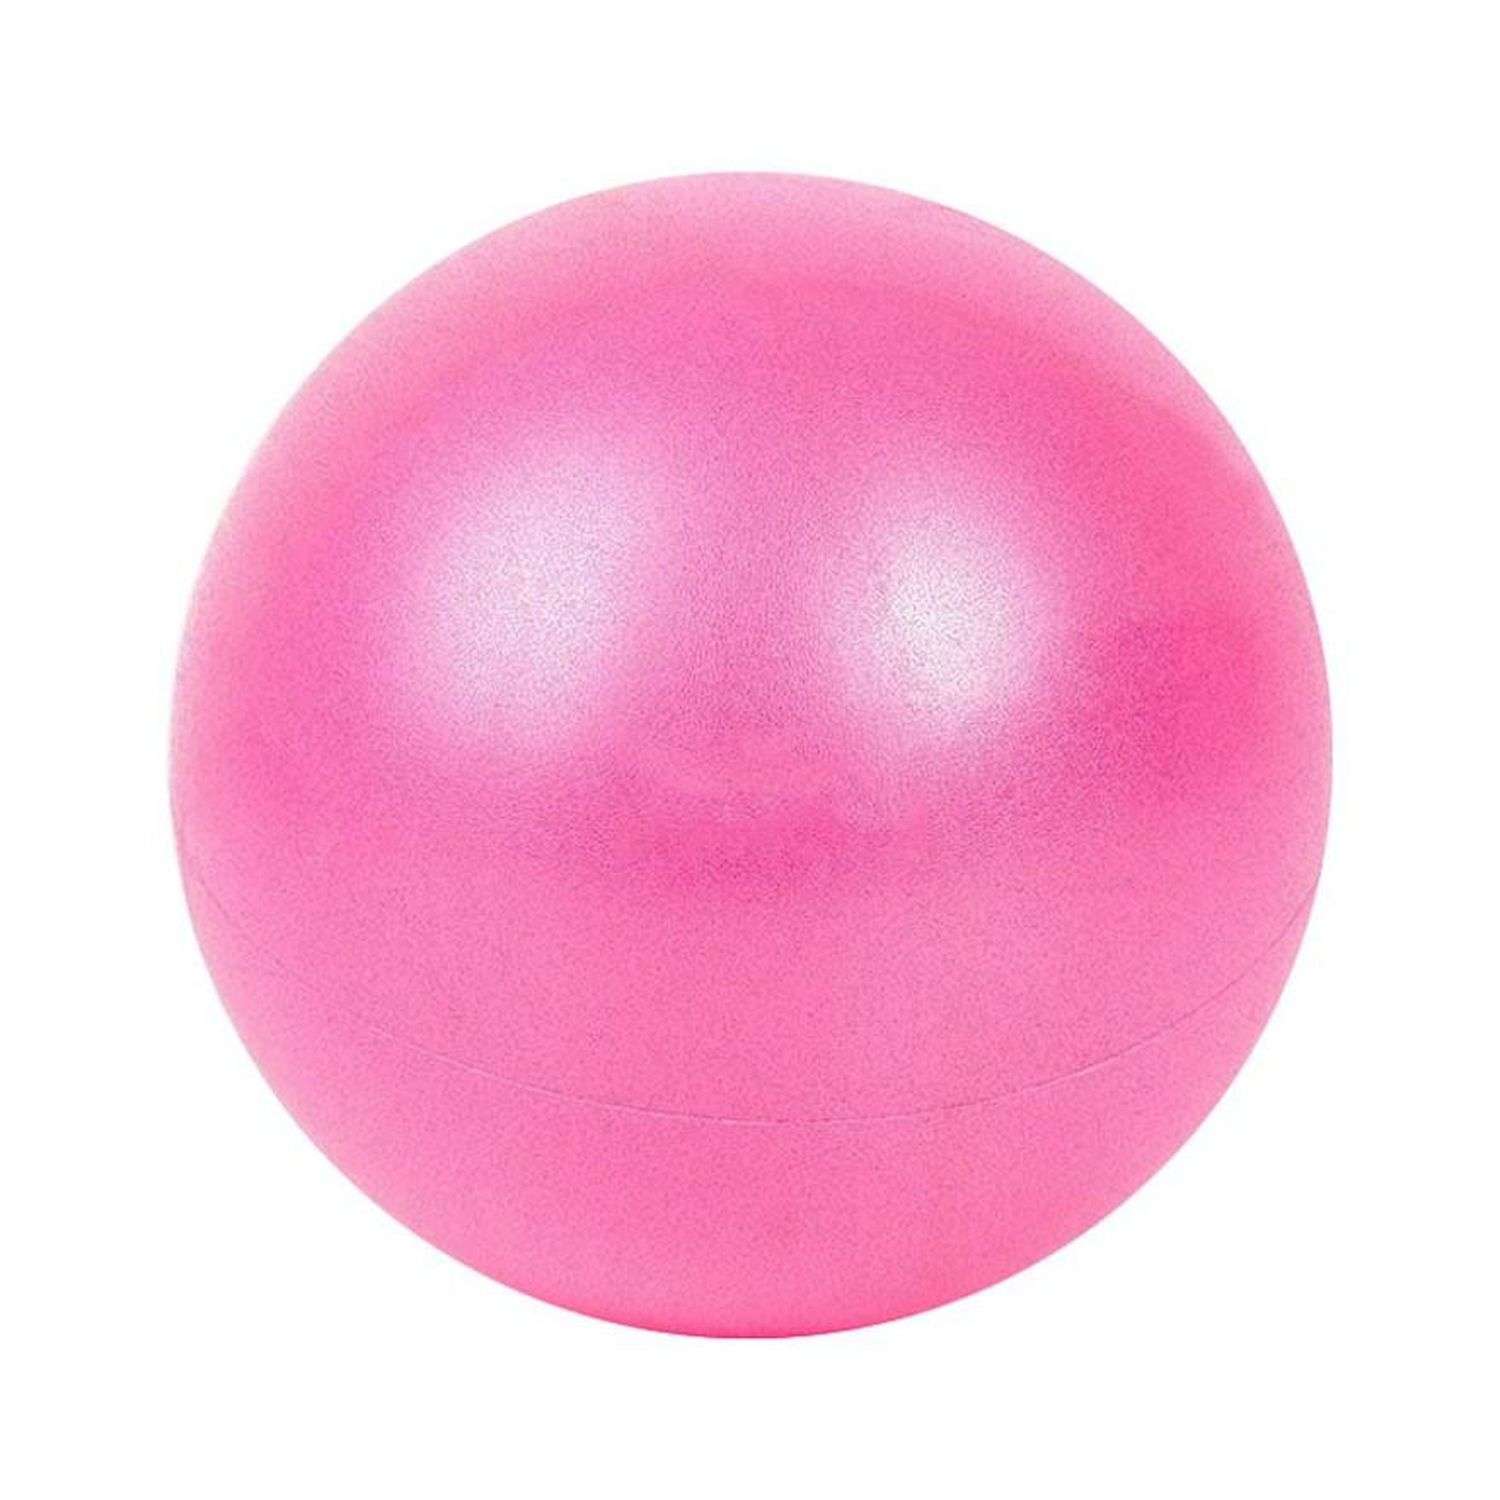 Мяч для йоги и пилатеса Beroma с антивзрывным эффектом 25 см розовый - фото 1